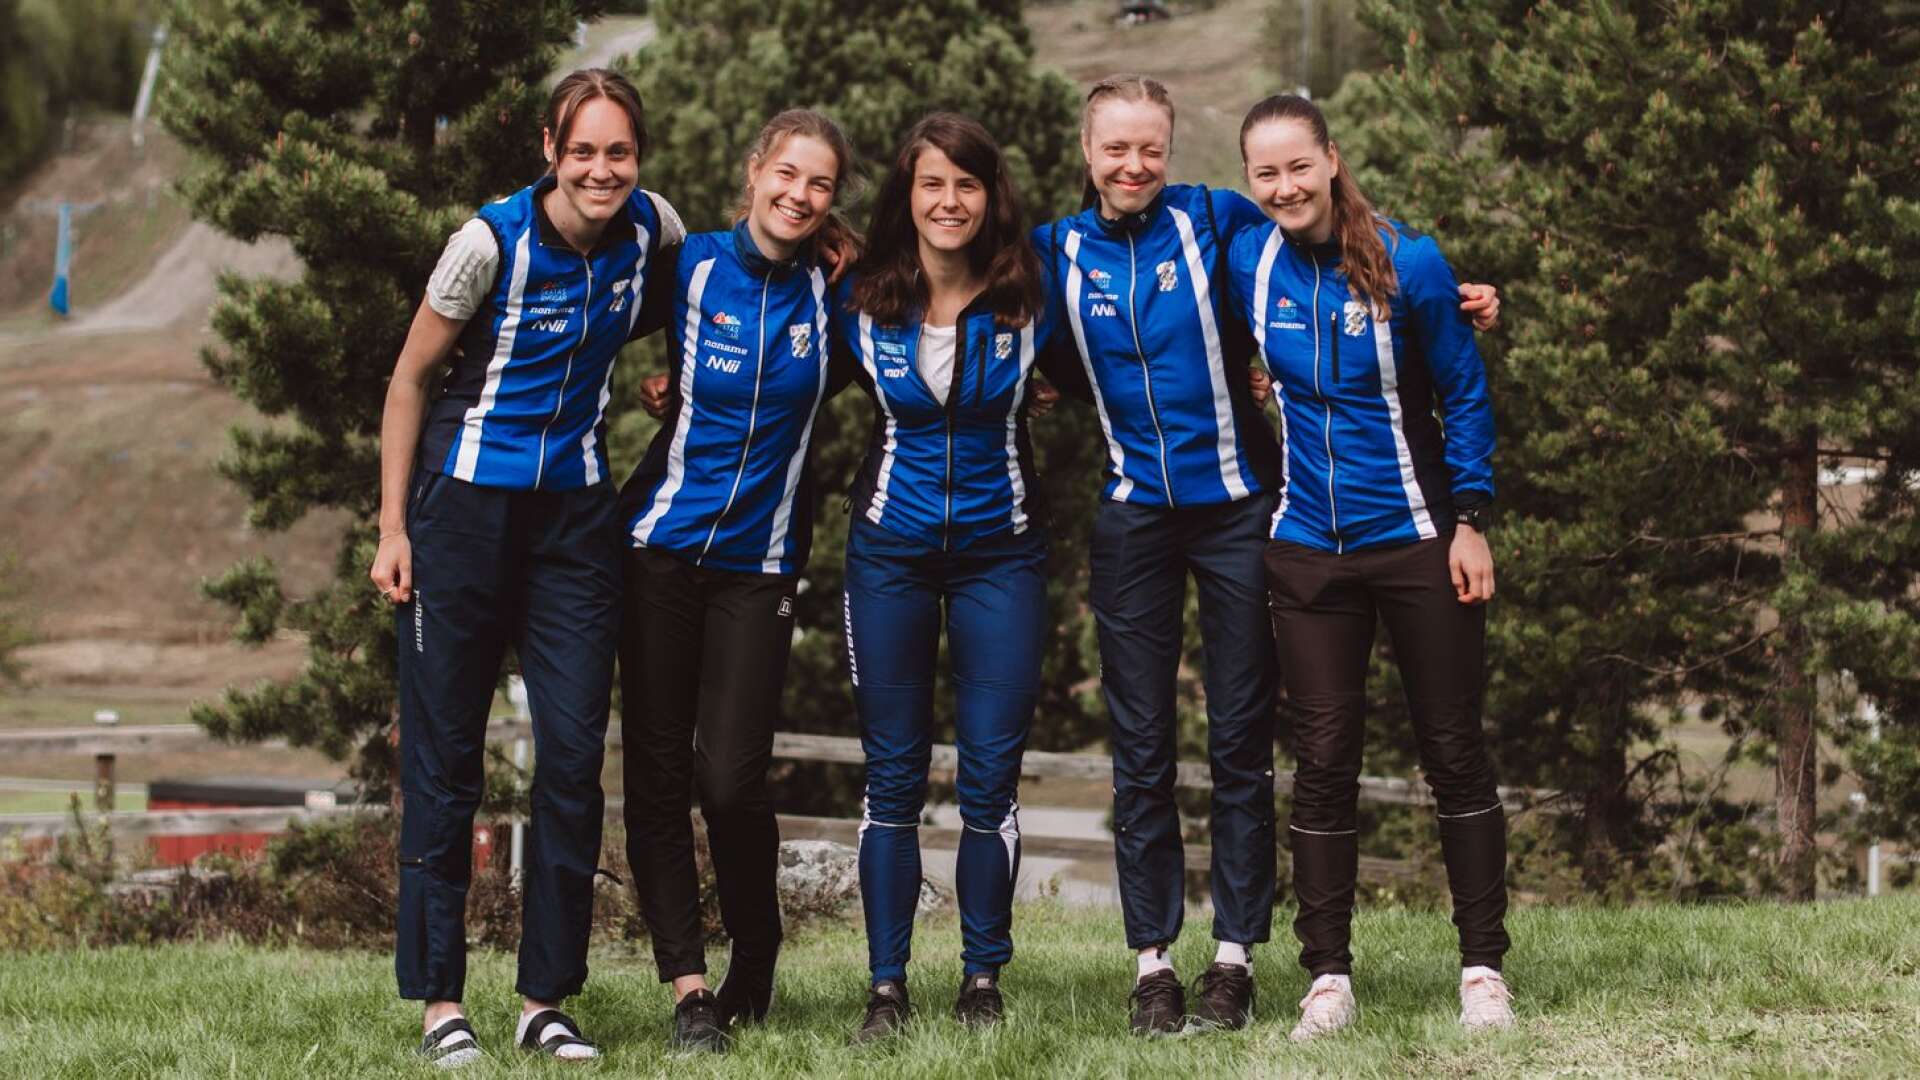 IFK Göteborgs lag 2 kom på andra plats i Tiomila. Från vänster: Ida Agervik Kristiansson, Johanna Källvik Leufvén, Isia Basset, Sanna Fasth och Ingrid Lundanes.